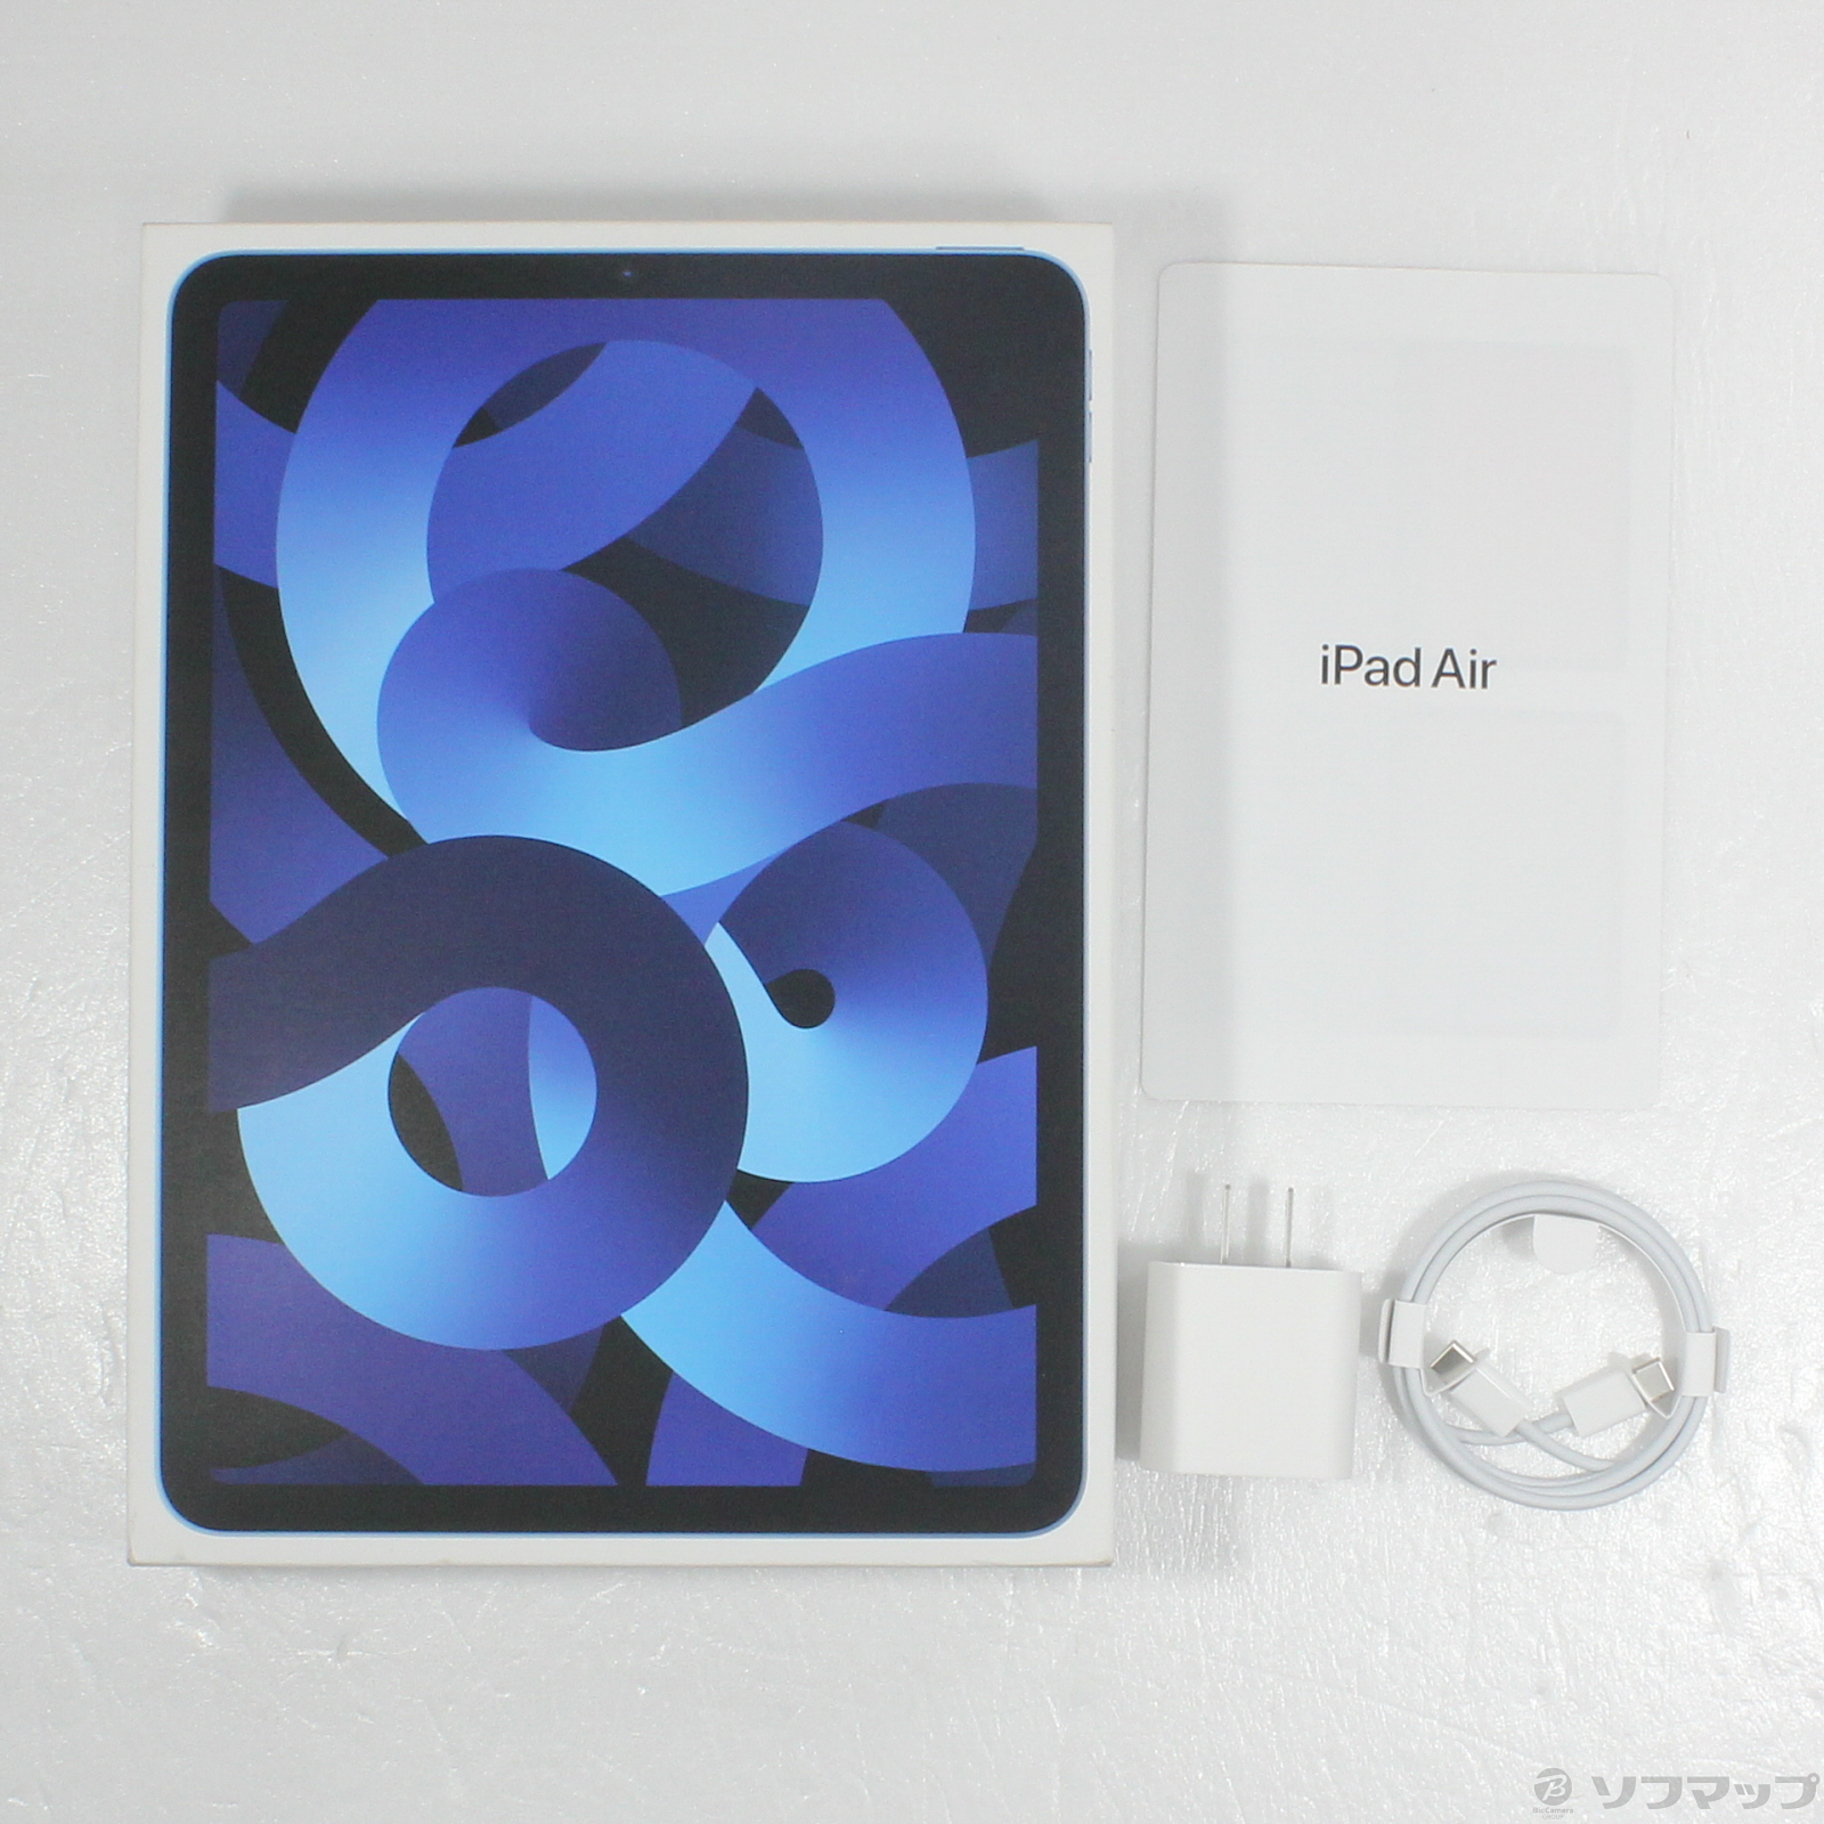 大阪本物iPad Air 5th 64GB ブルー WiFi iPad本体